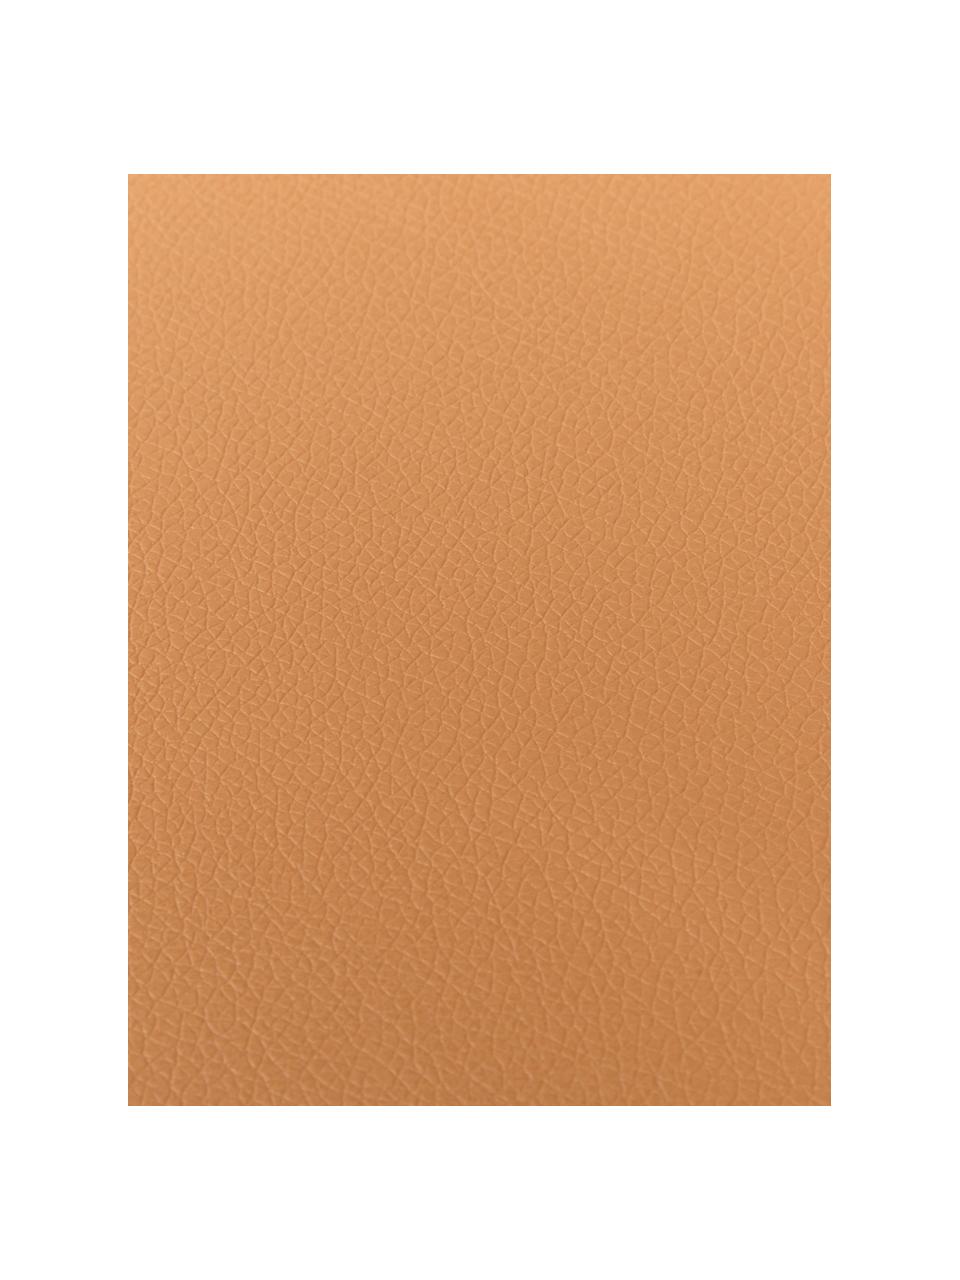 Podkładka ze sztucznej skóry Pik, 2 szt., Tworzywo sztuczne (PVC), Jasny brązowy, S 33 x D 46 cm